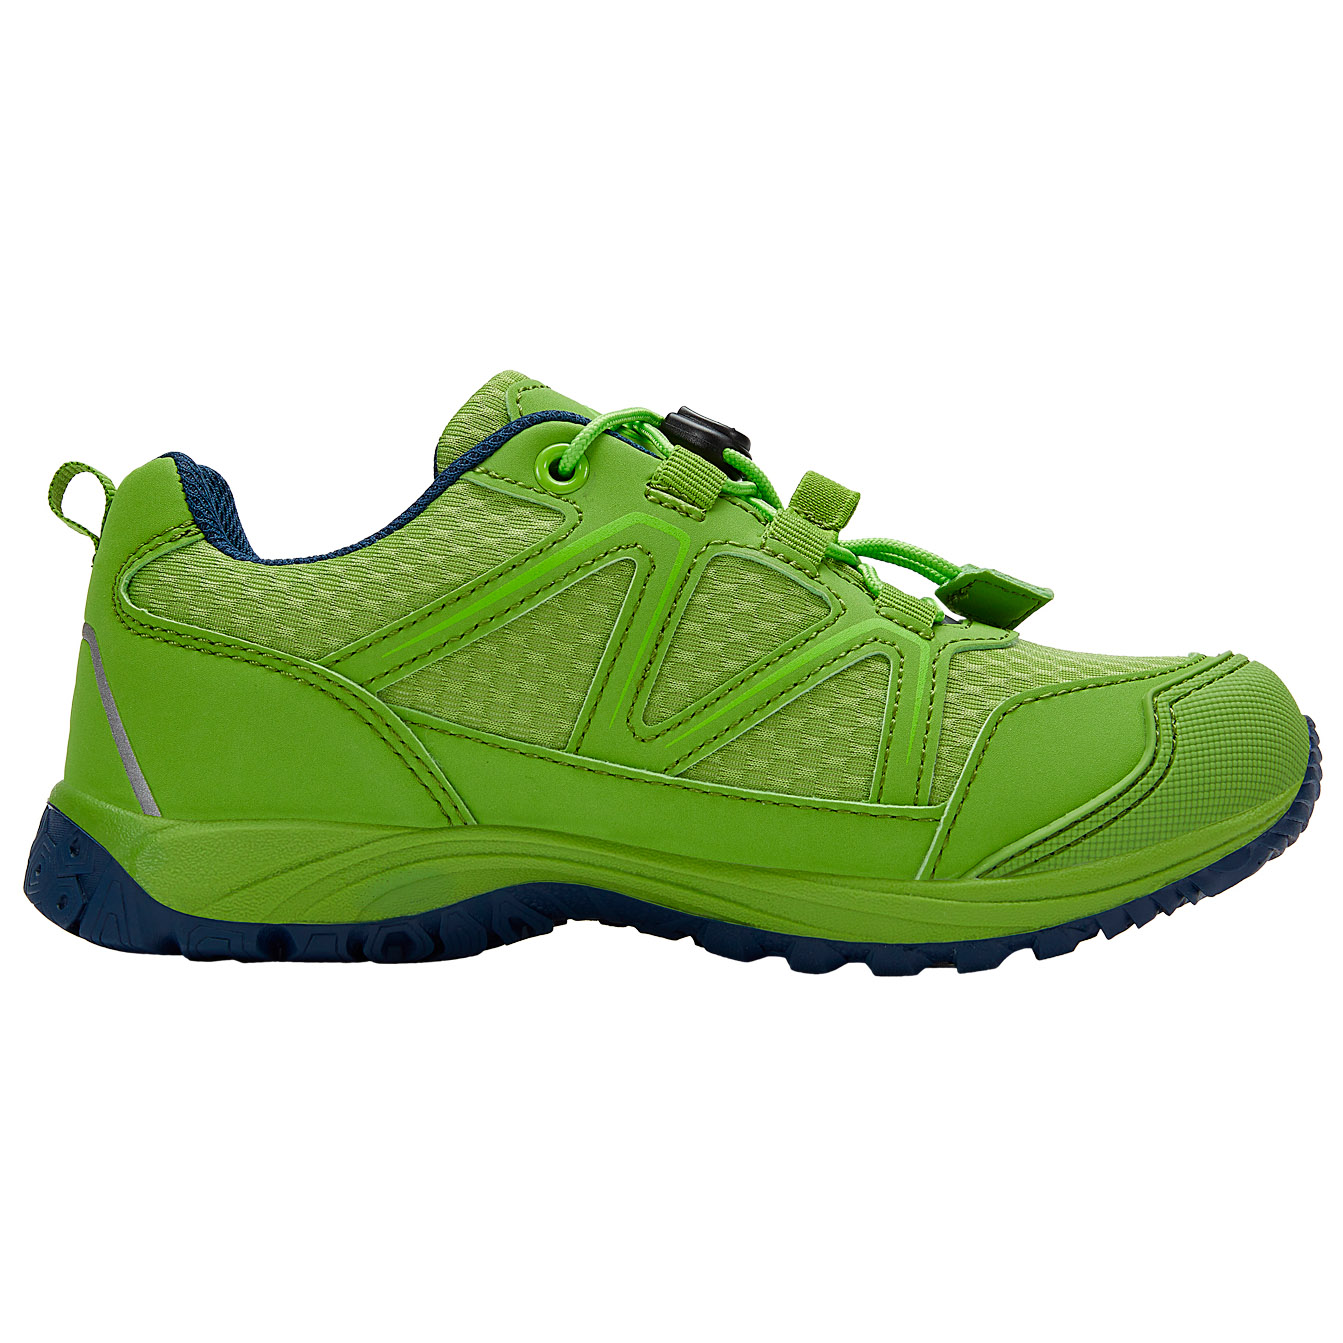 Мультиспортивная обувь Trollkids Kid's Skarvan Hiker Low, цвет Kiwi/Green Lizard